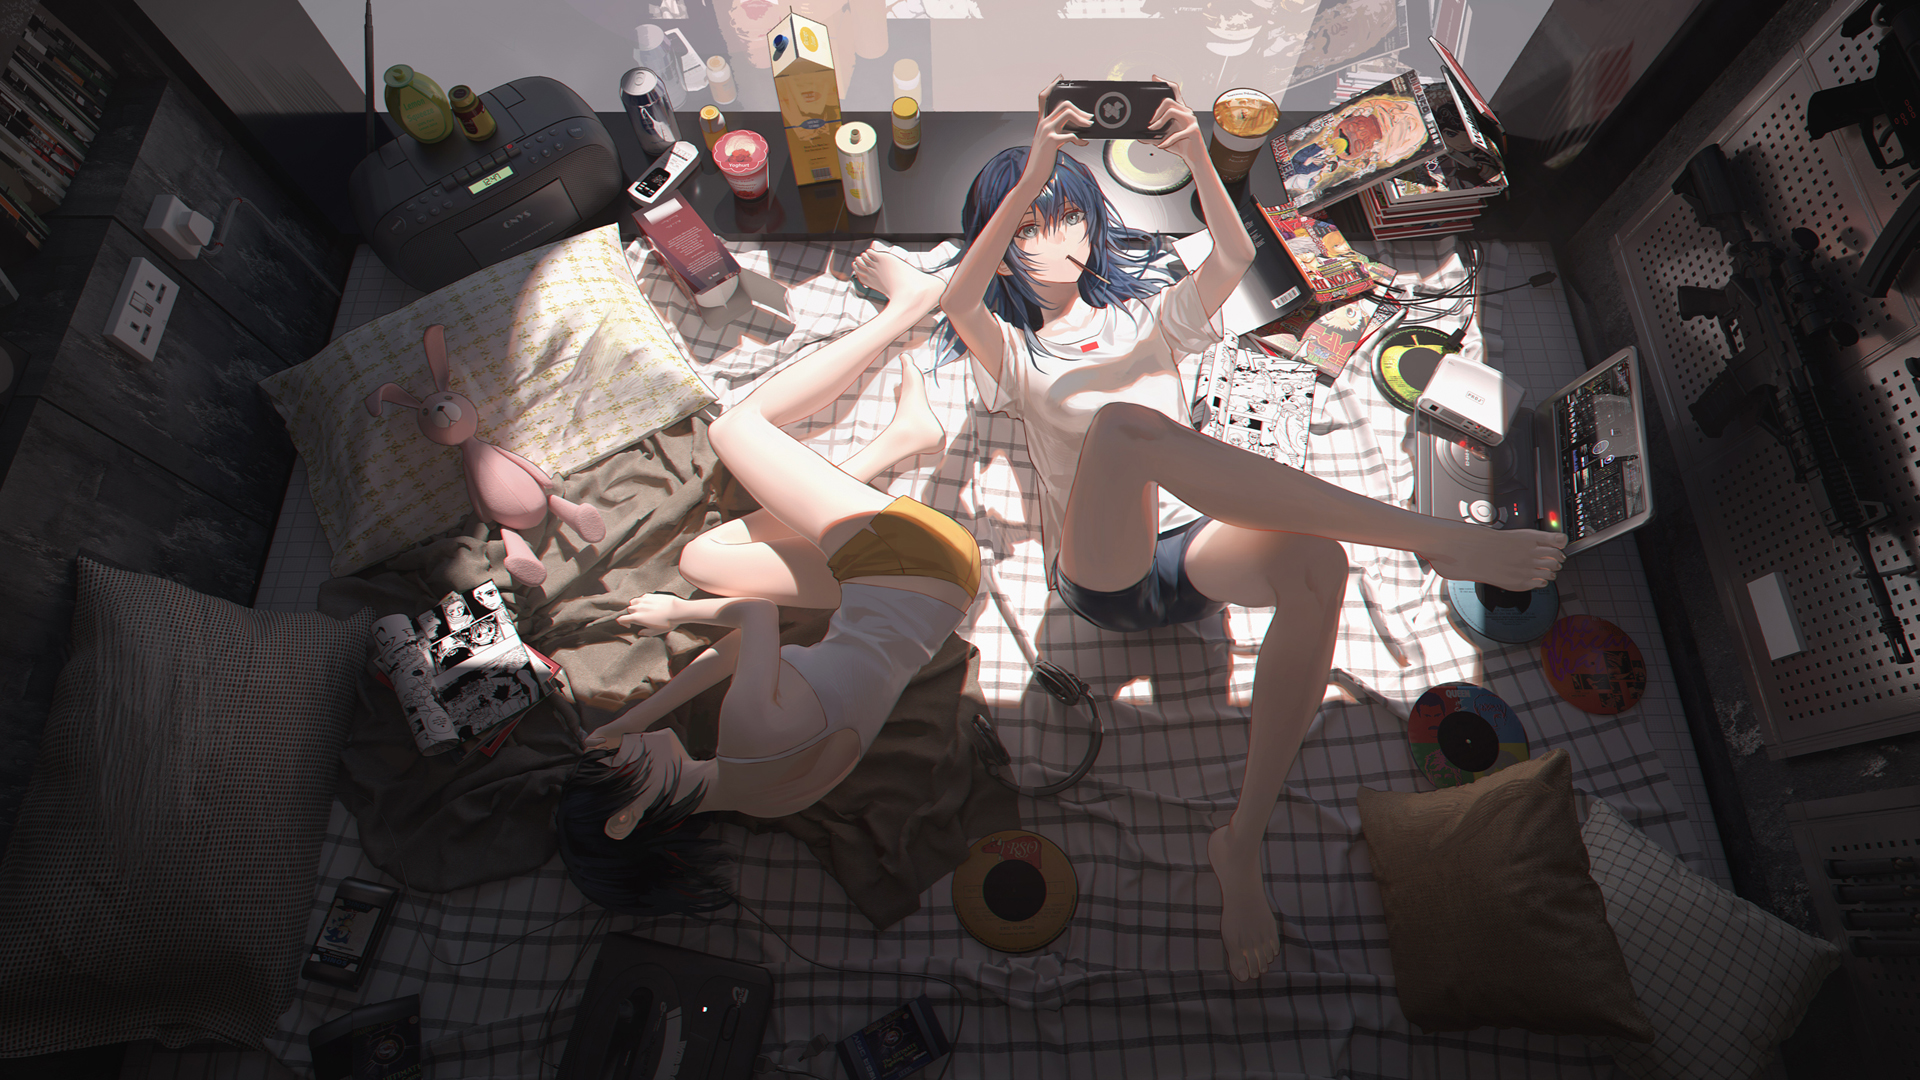 Anime 1920x1080 anime anime girls legs bedroom blue hair PSP short shorts teddy bears messy Hunter x Hunter manga lying on side